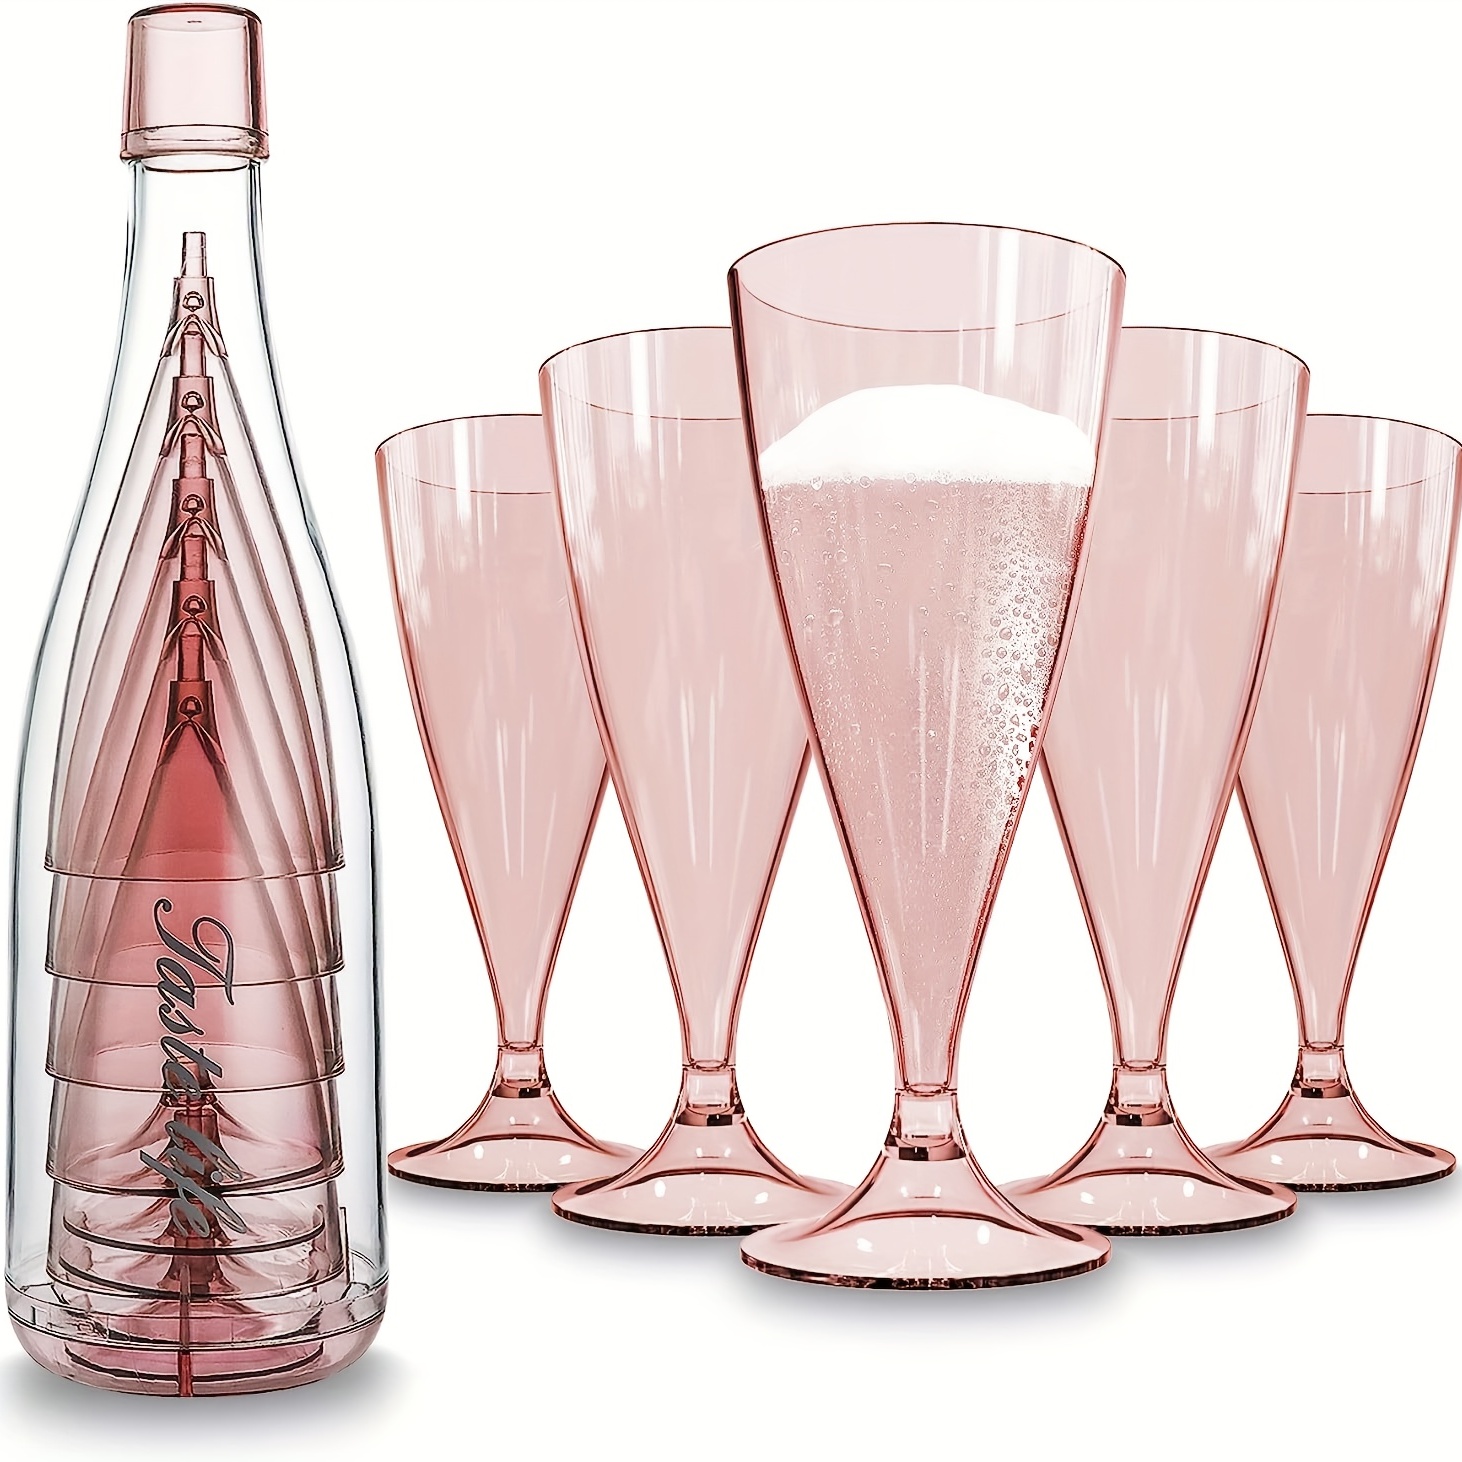 Flûte à champagne plastique : vaisselle jetable pour trinquer - Je table